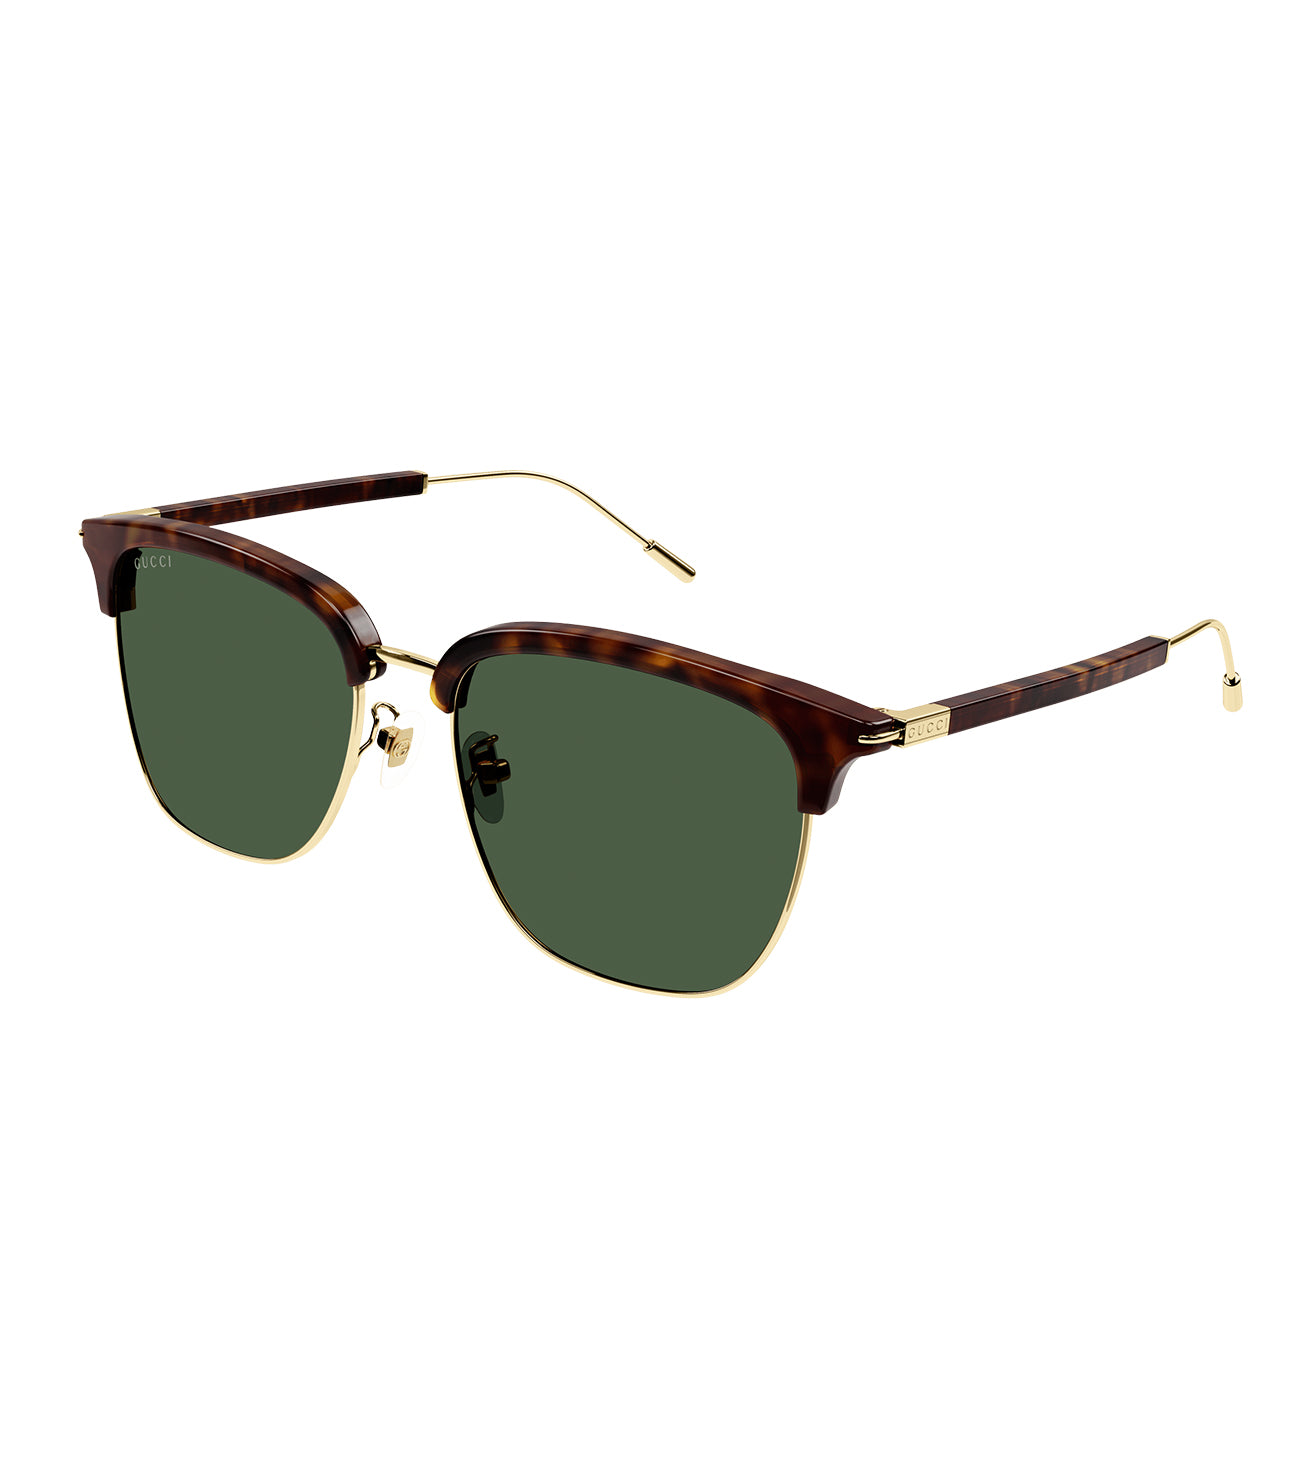 Gucci Men's Green Oval Sunglasses